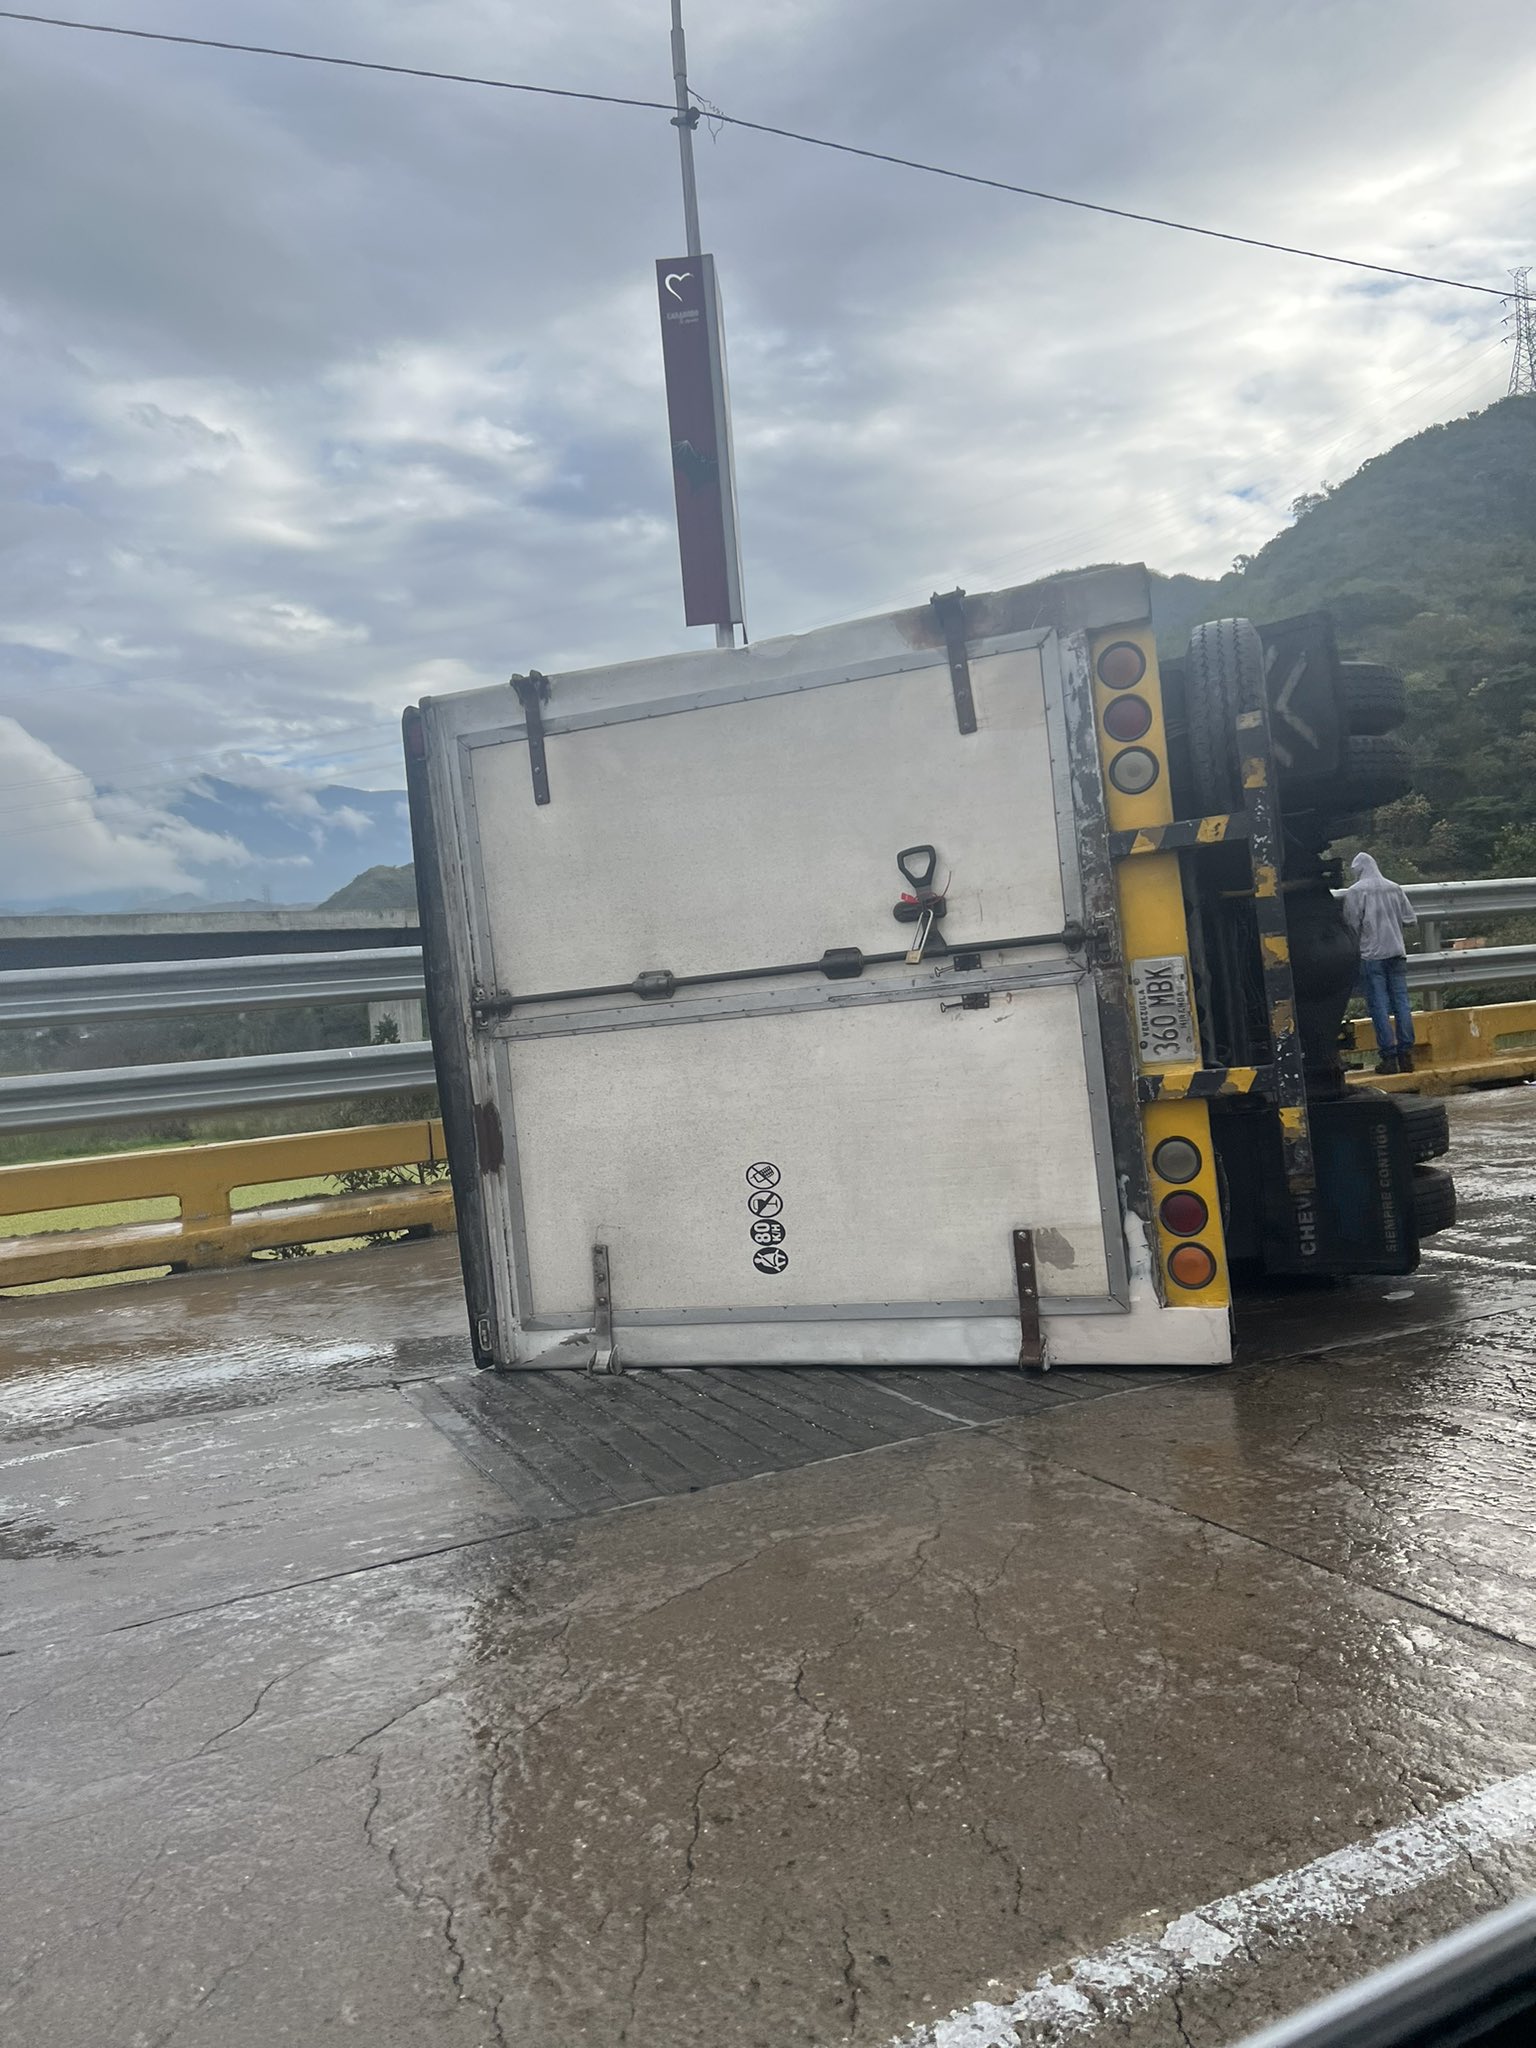 Volcamiento de un camión en el Viaducto La Cabrera - Volcamiento de un camión en el Viaducto La Cabrera